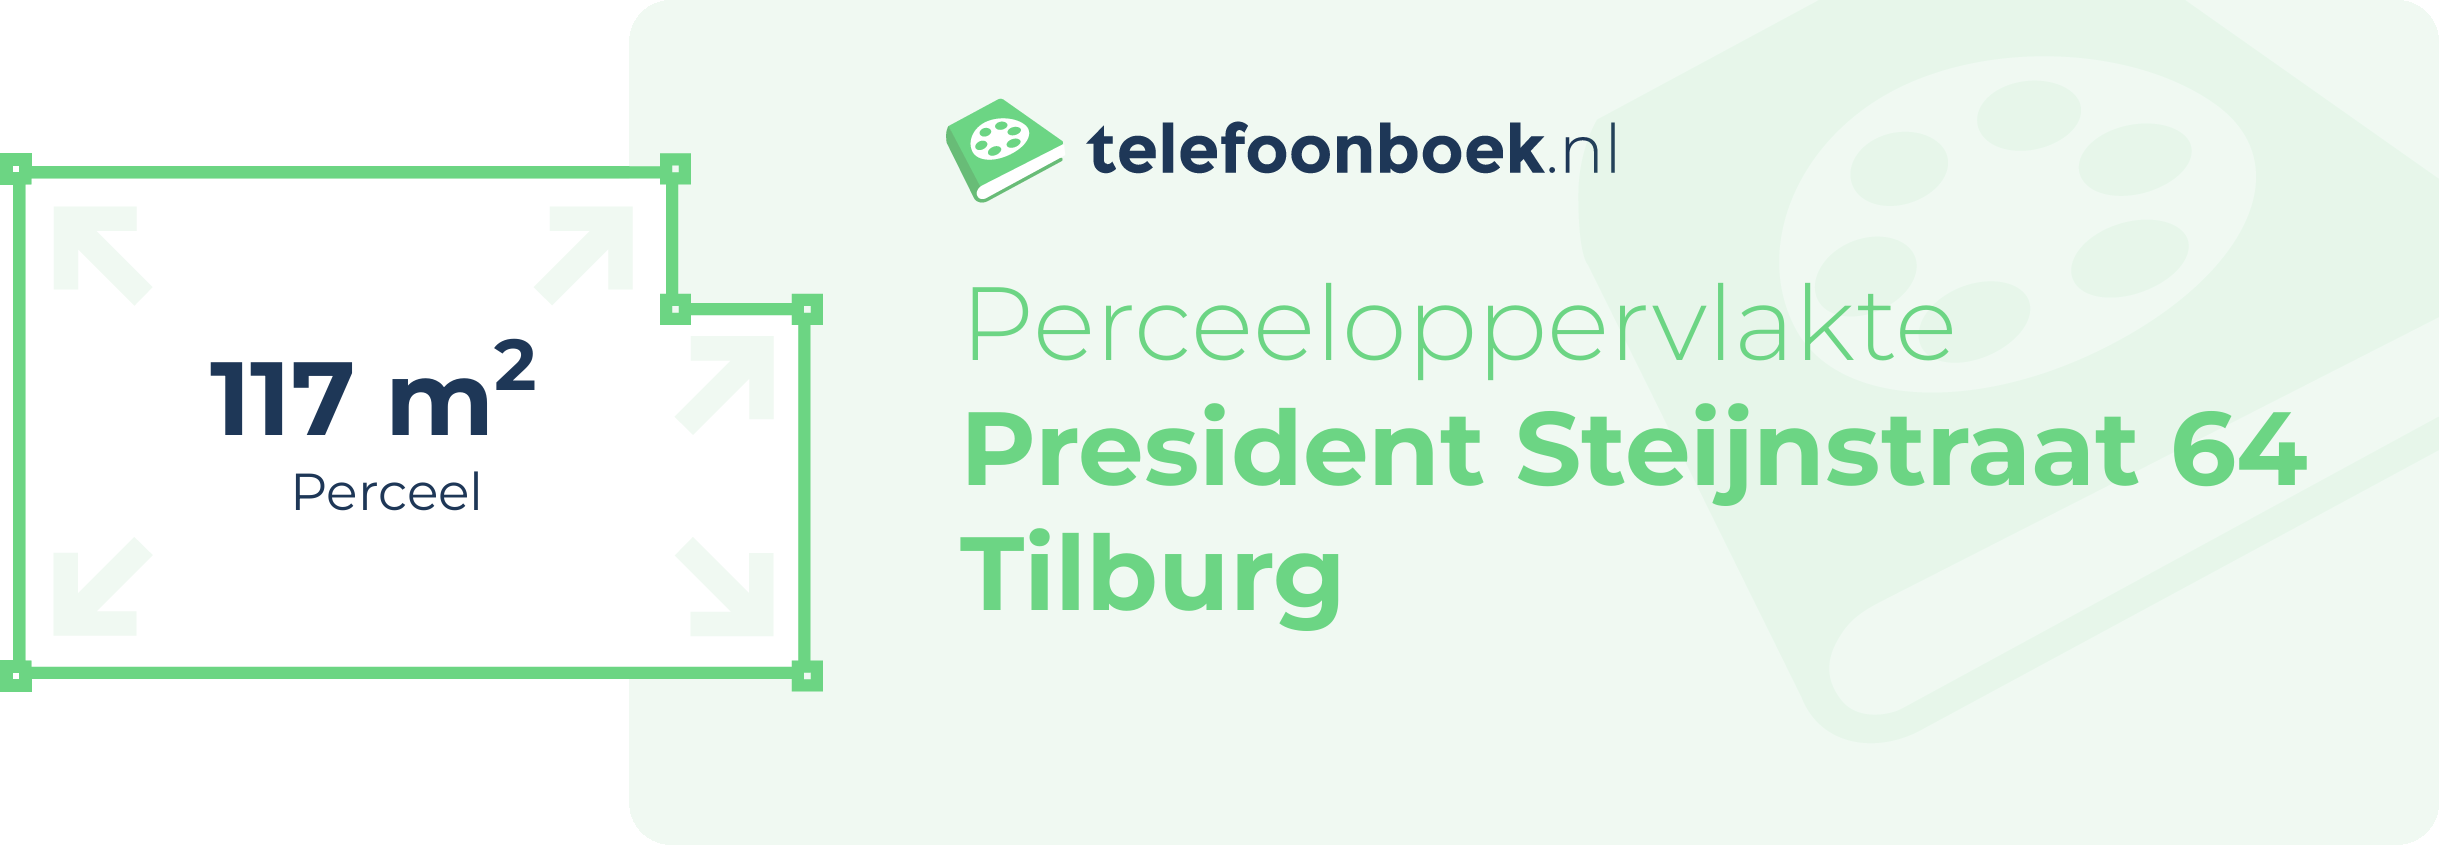 Perceeloppervlakte President Steijnstraat 64 Tilburg